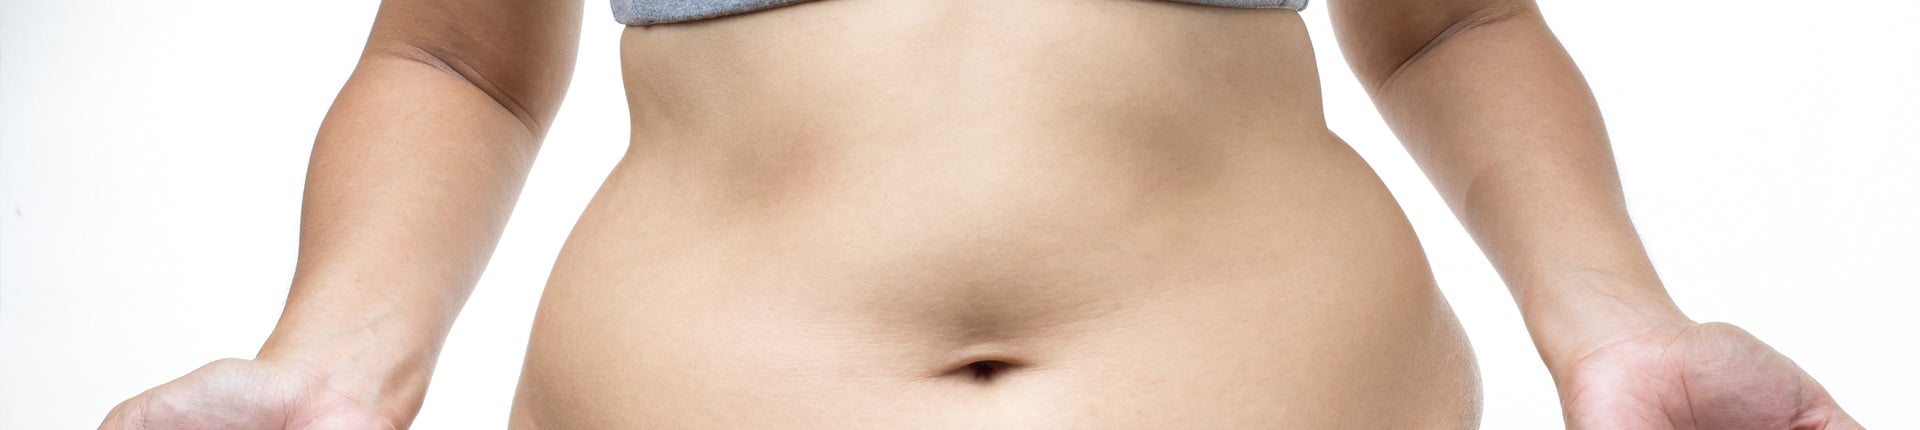 5 rodzajów brzuszka, które nie są związane z nadmierną masą ciała